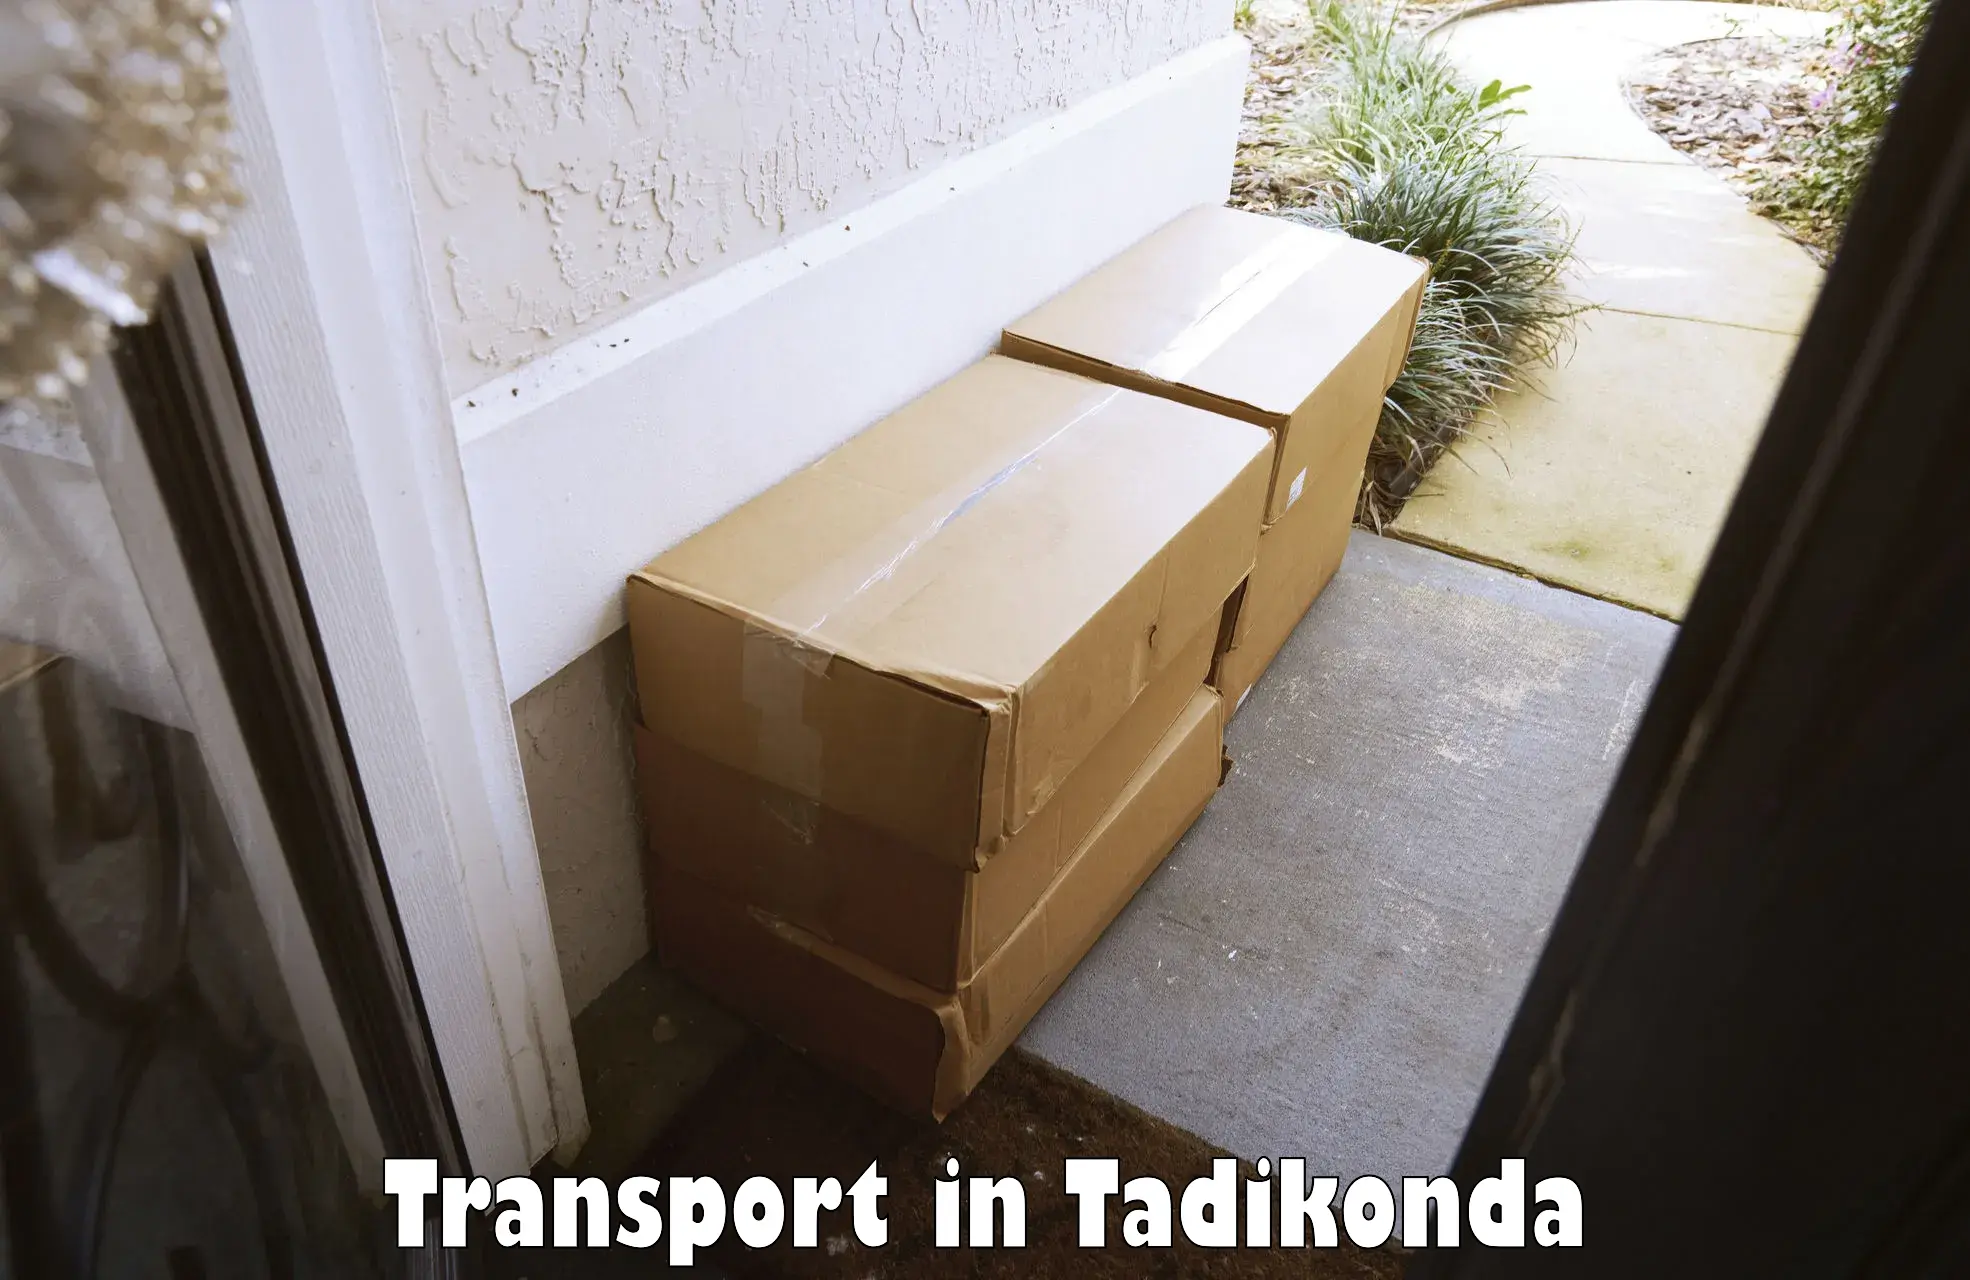 Door to door transport services in Tadikonda